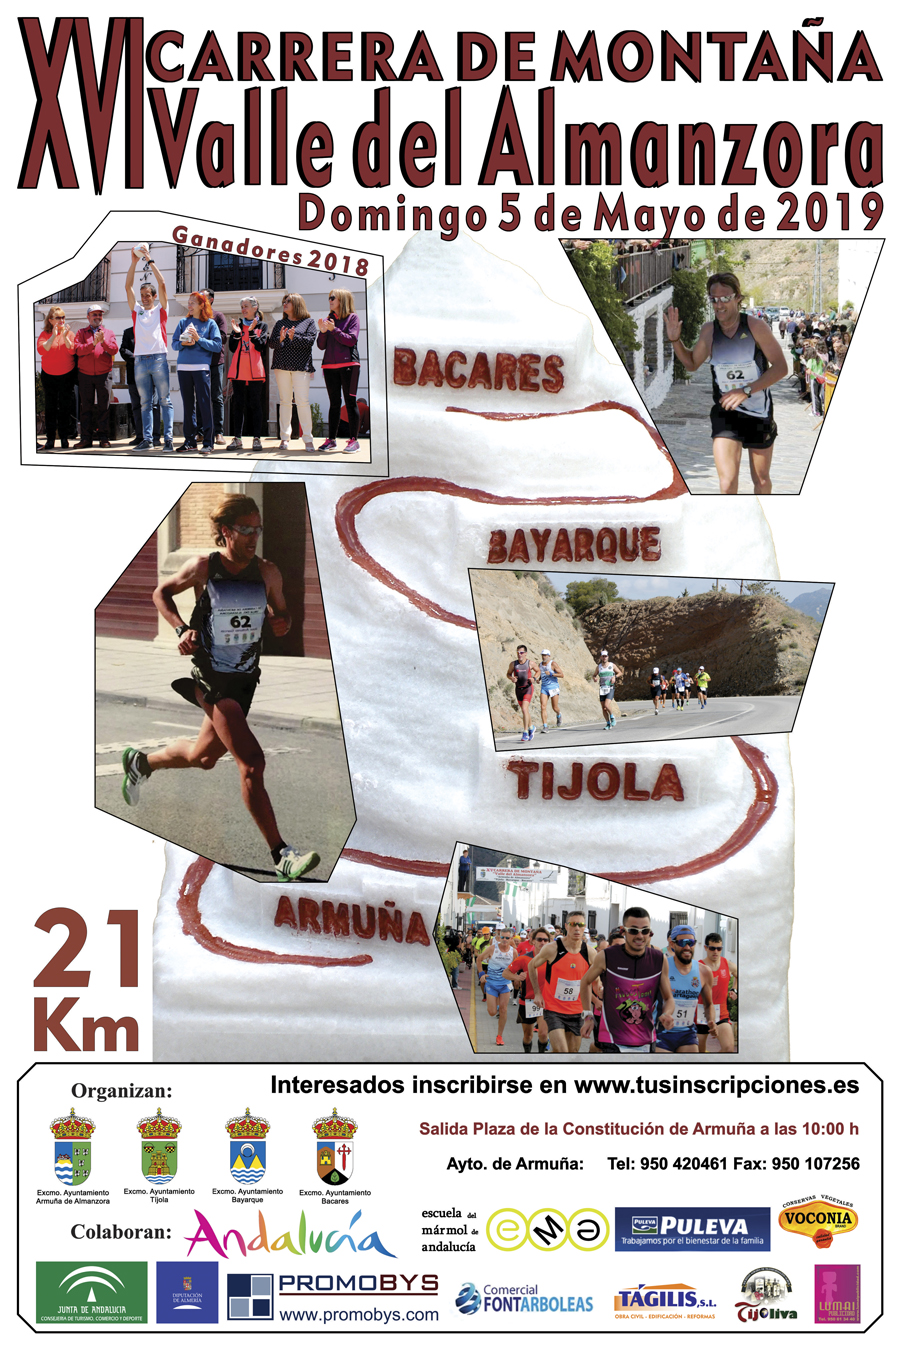 Imagen del Cartel de la Carrera de Montaña 2019. Imágenes de diversos momentos de la carrera a su paso por los municipios.